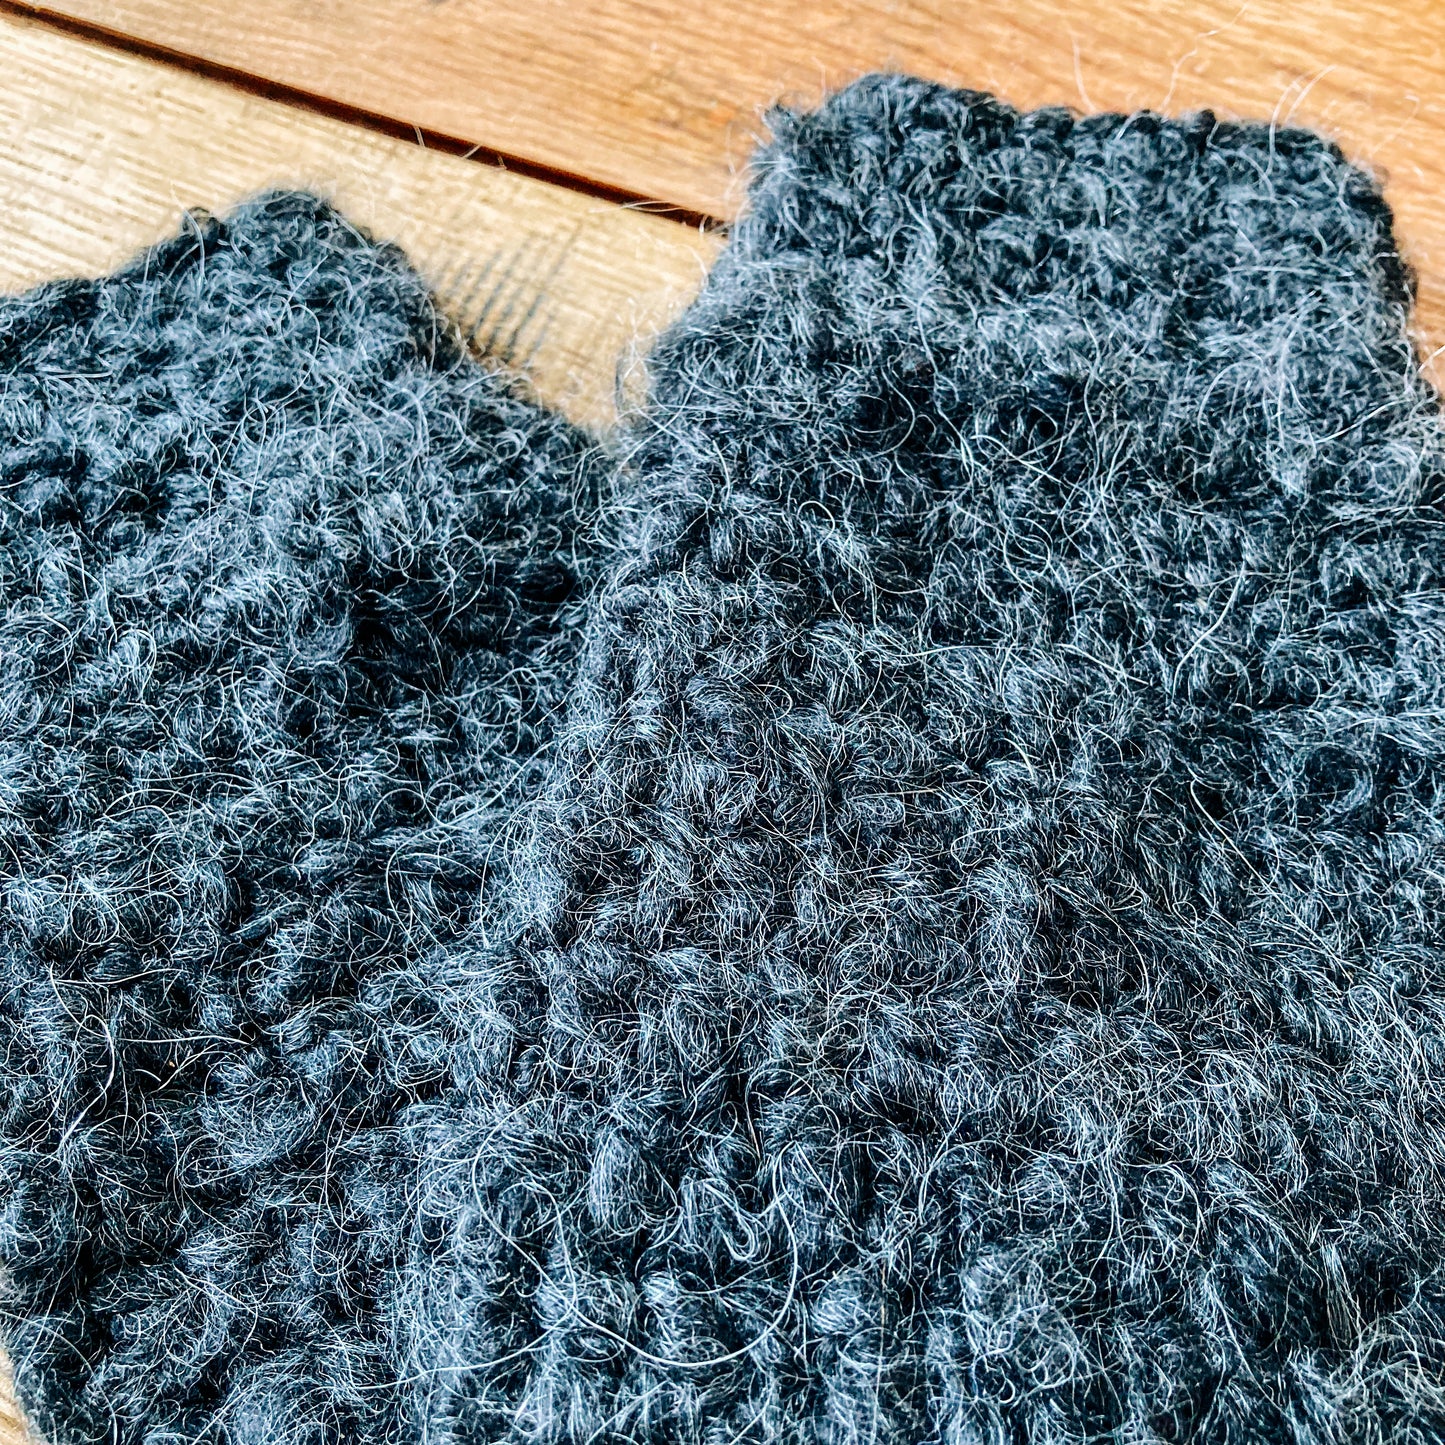 Crocheted Fingerless Gloves